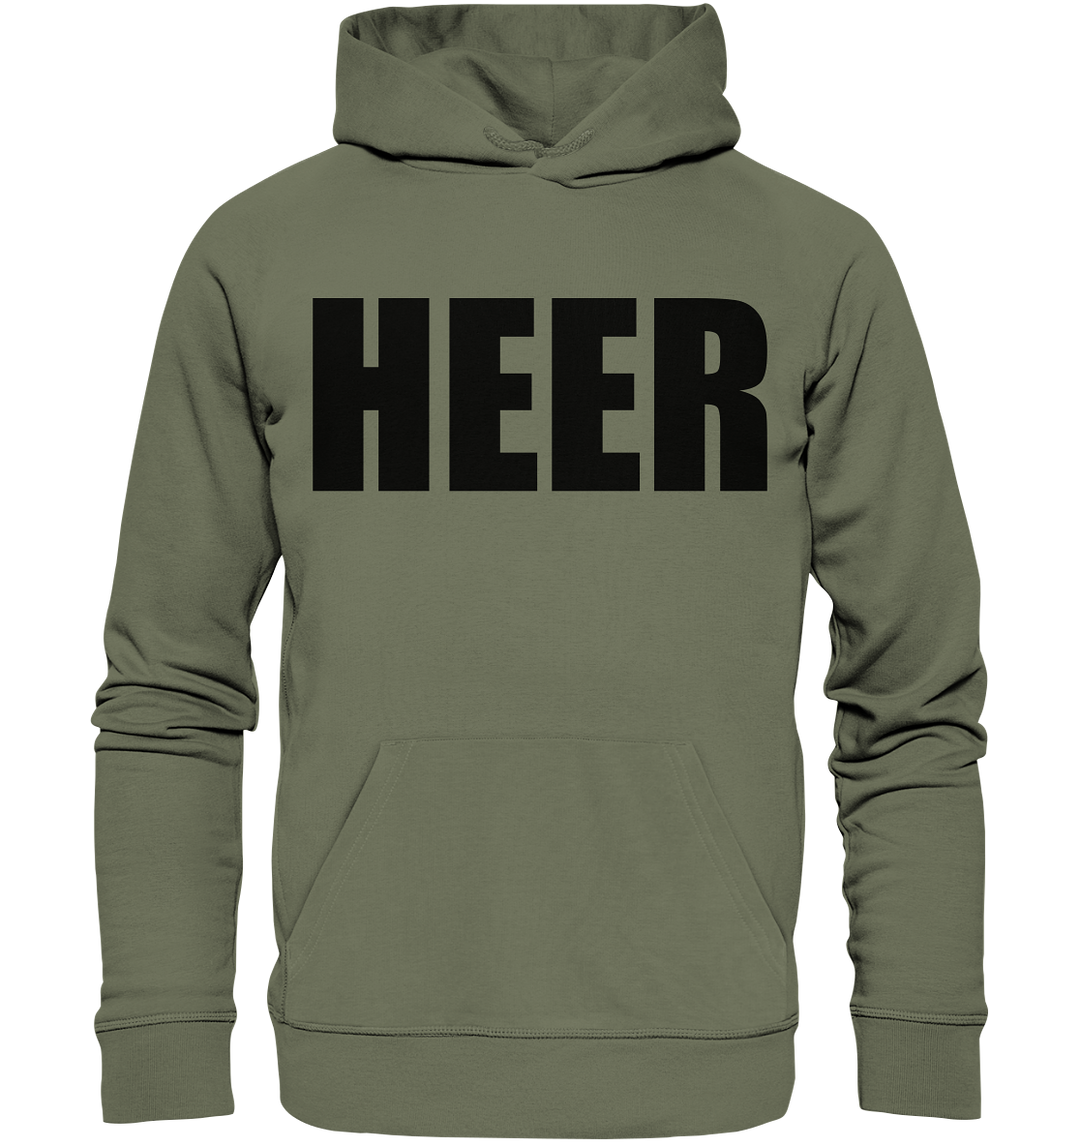 HEER - Premium Unisex Hoodie